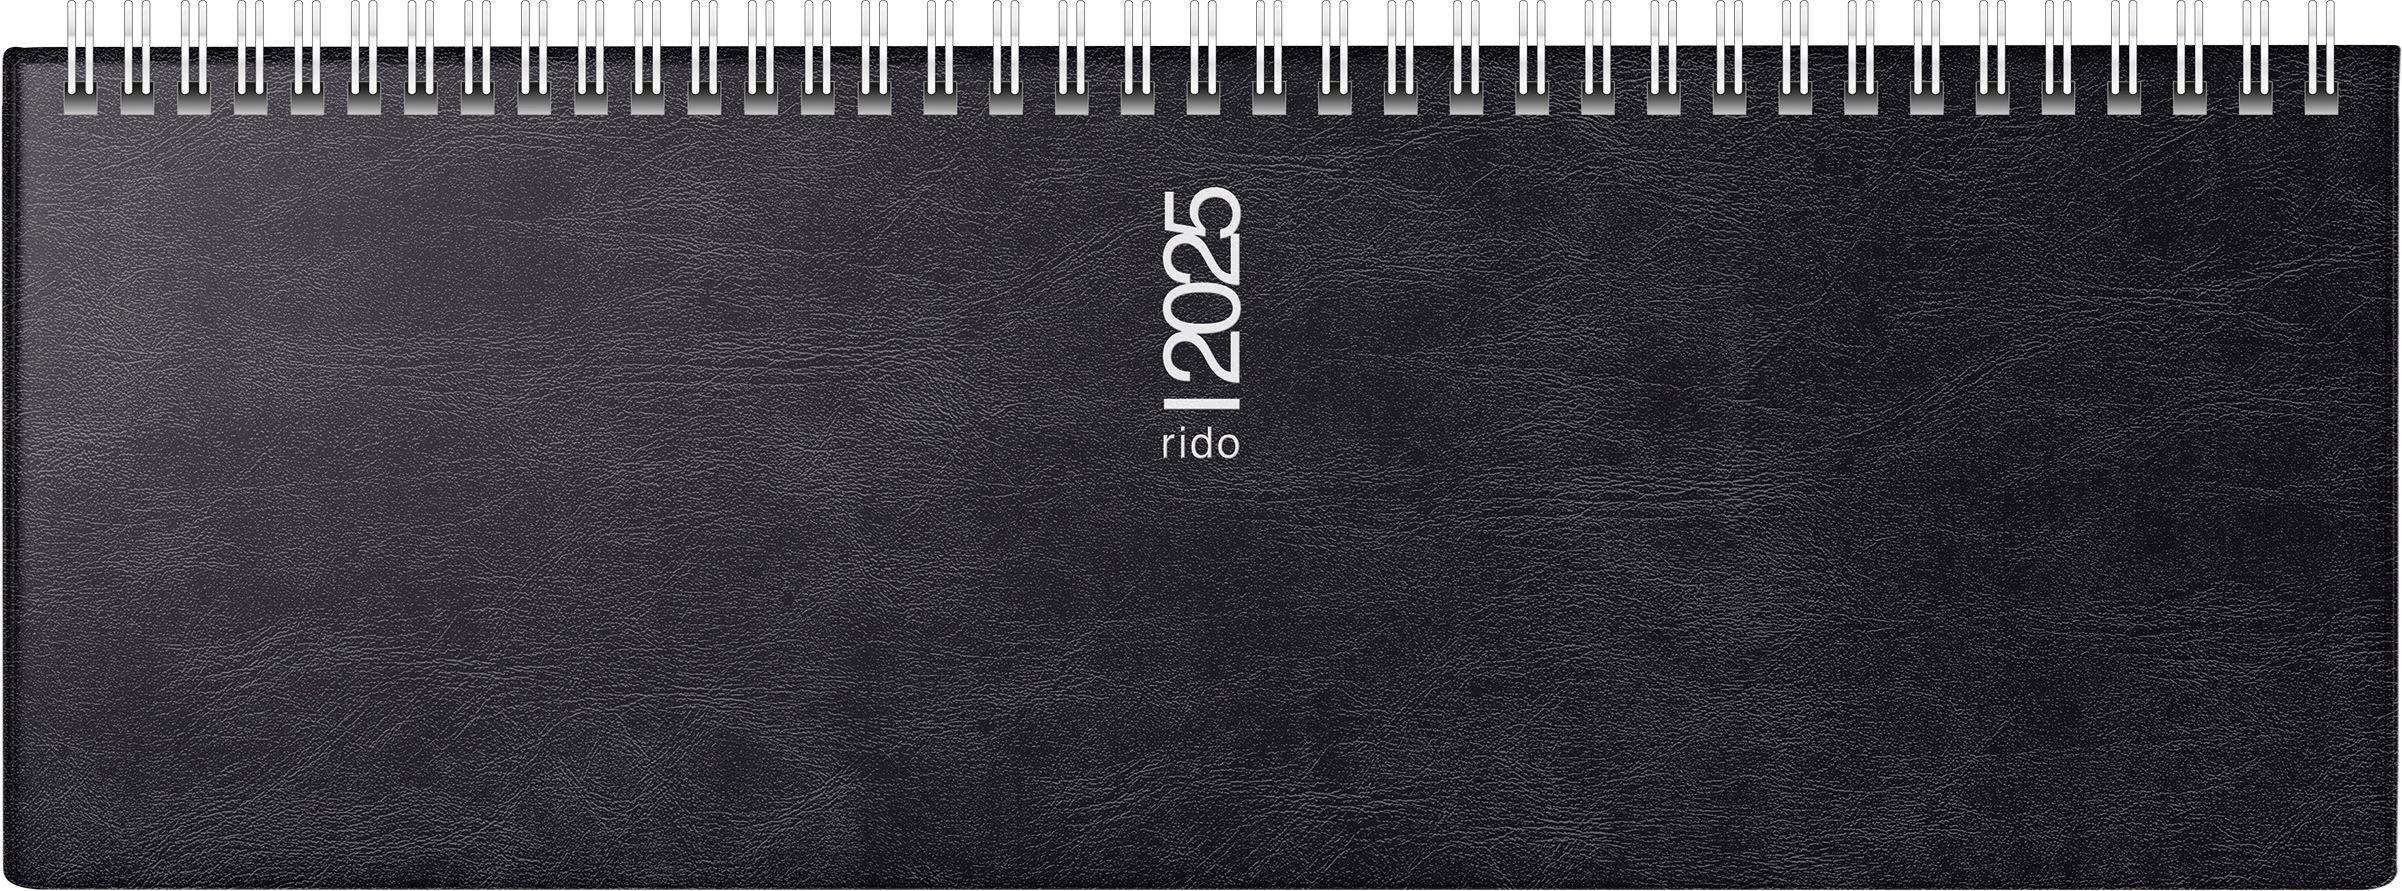 rido/idé 7036142905 Querterminbuch Modell septant (2025)| 2 Seiten = 1 Woche| 305 × 105 mm| 128 Seiten| Schaumfolien-Einband Catana| schwarz